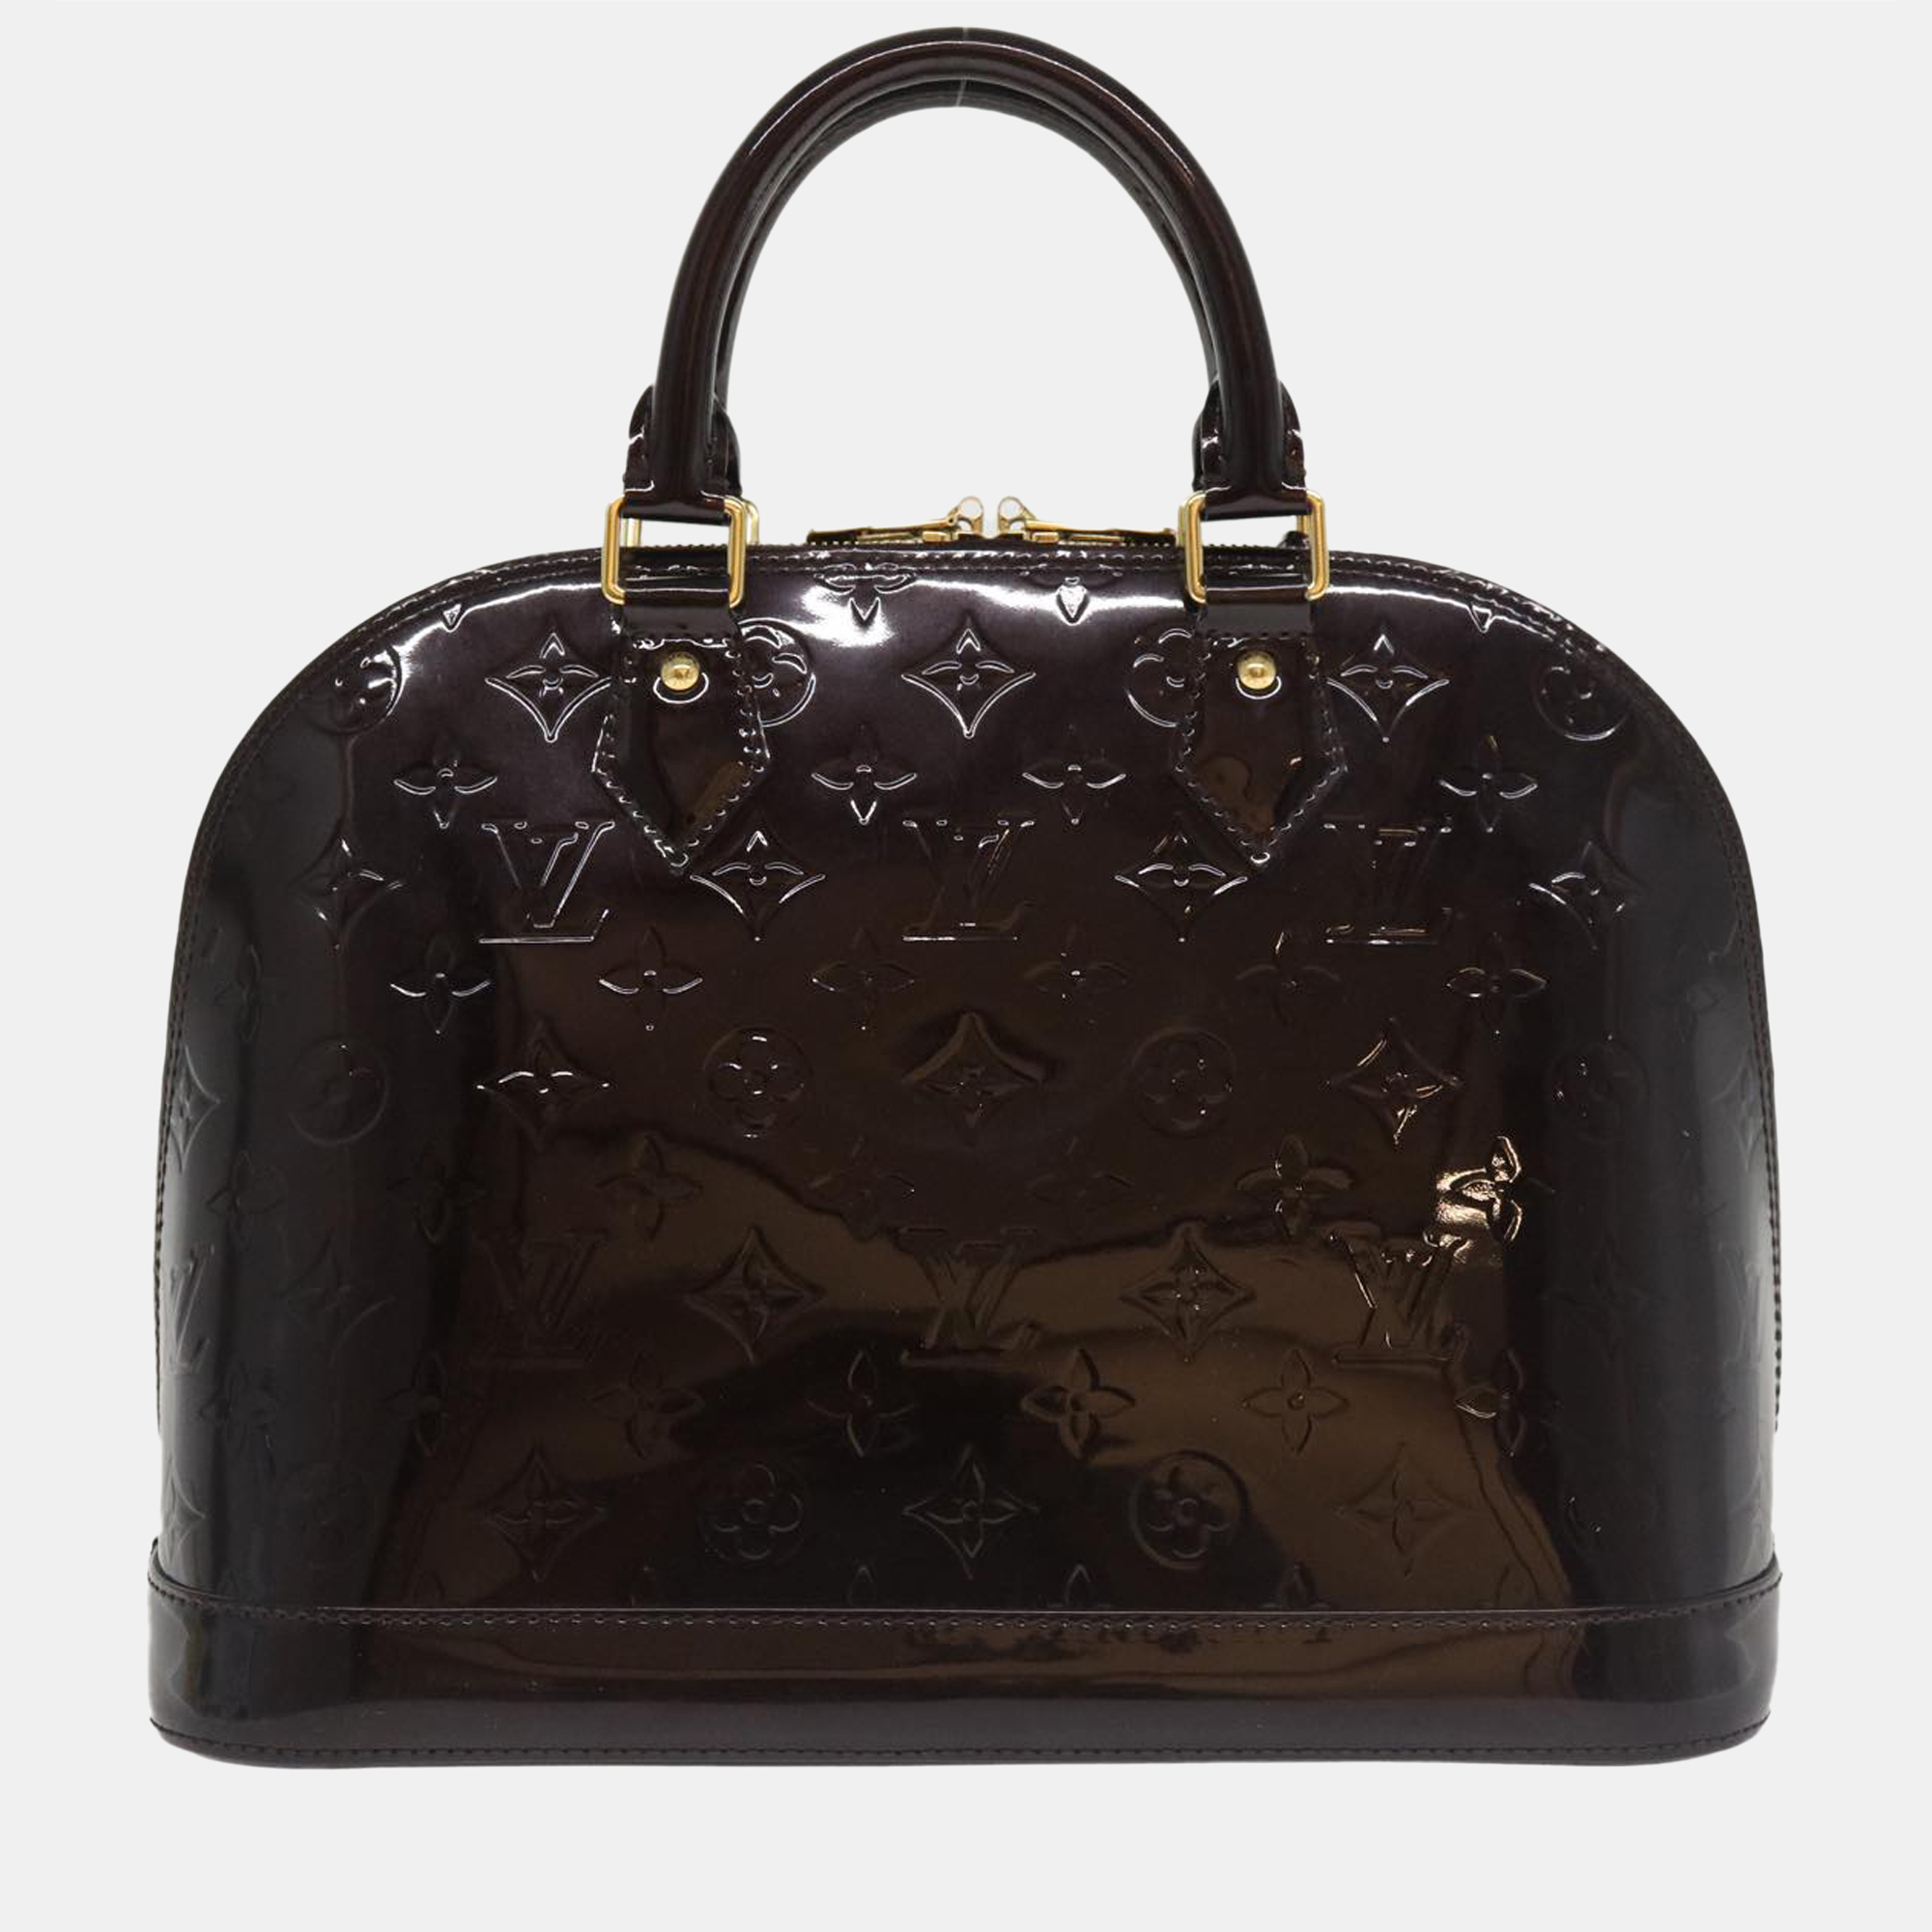 

Louis Vuitton Bordeaux Monogram Vernis Leather Alma PM Satchel, Burgundy